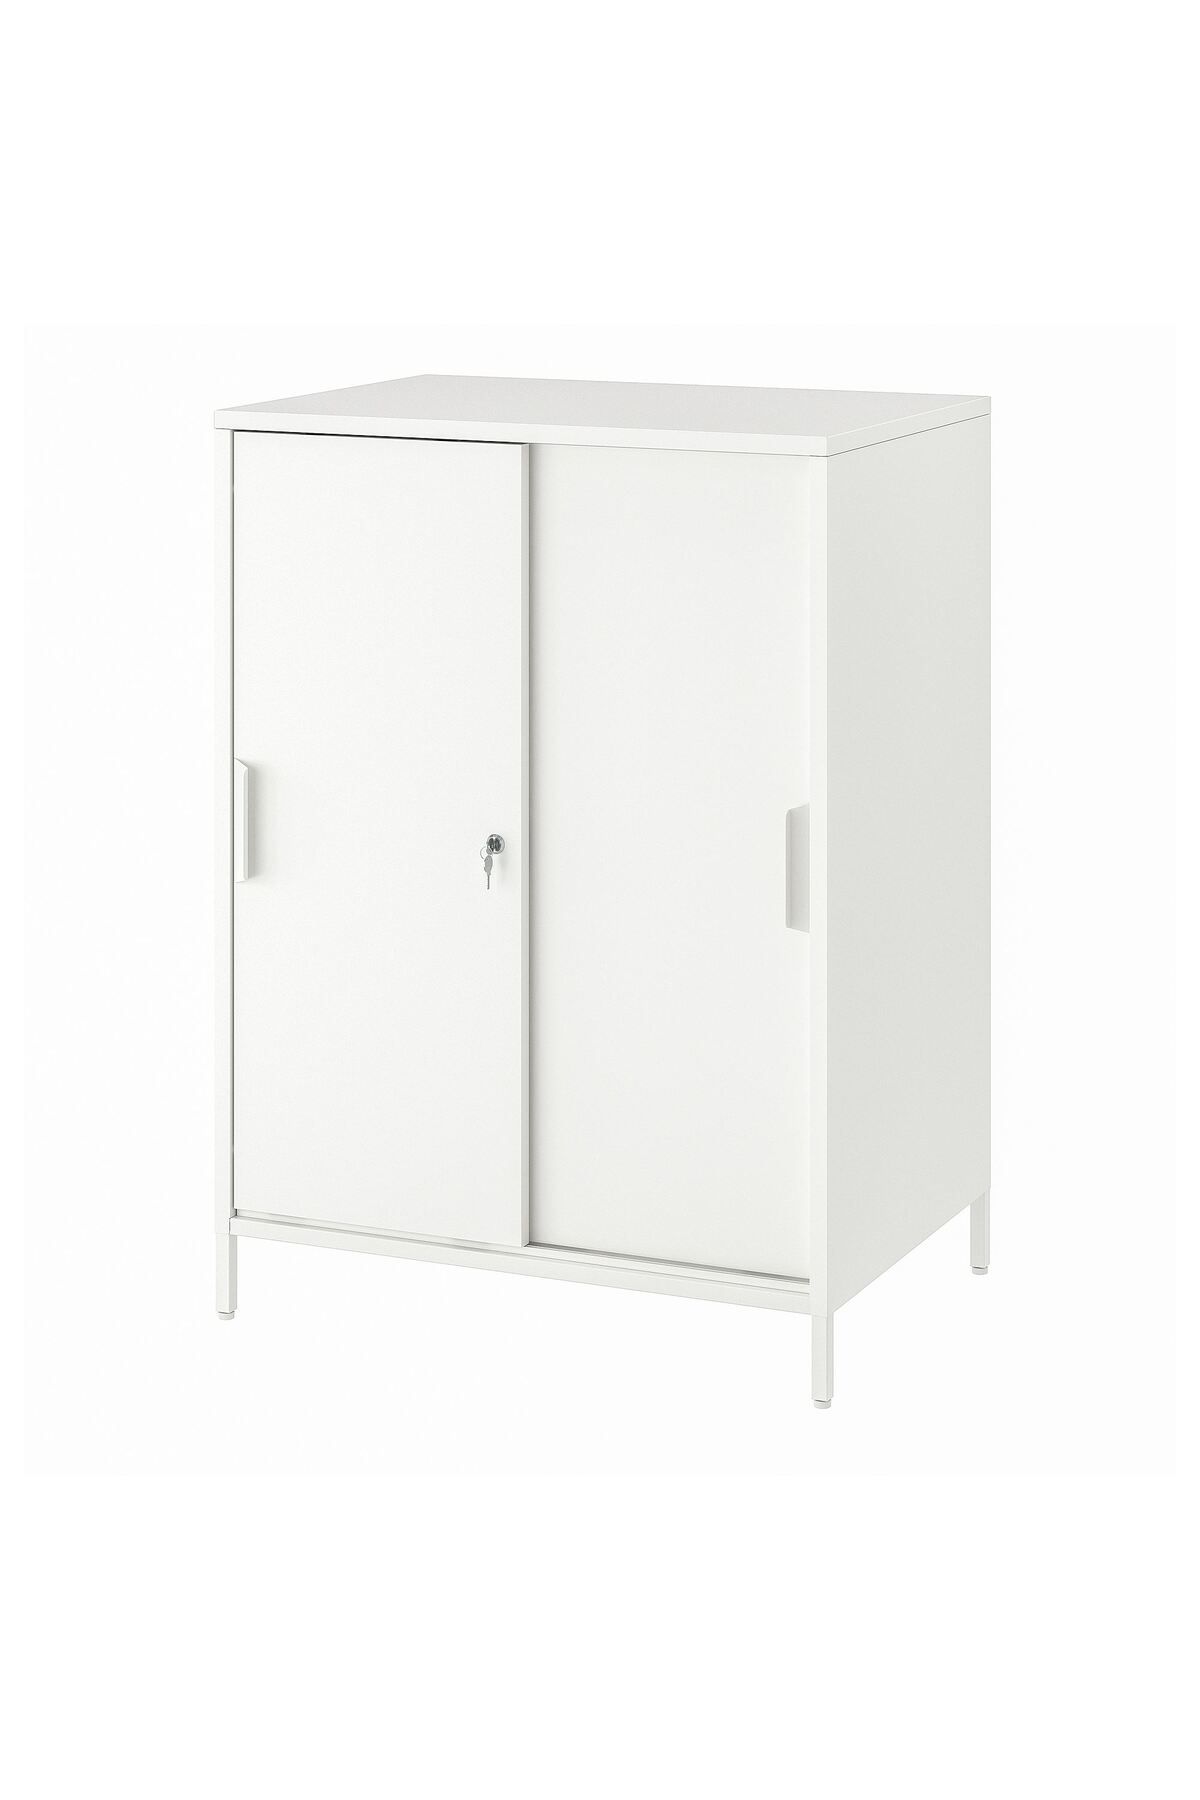 IKEA sürgü kapaklı dolap, beyaz, 80x110 cm